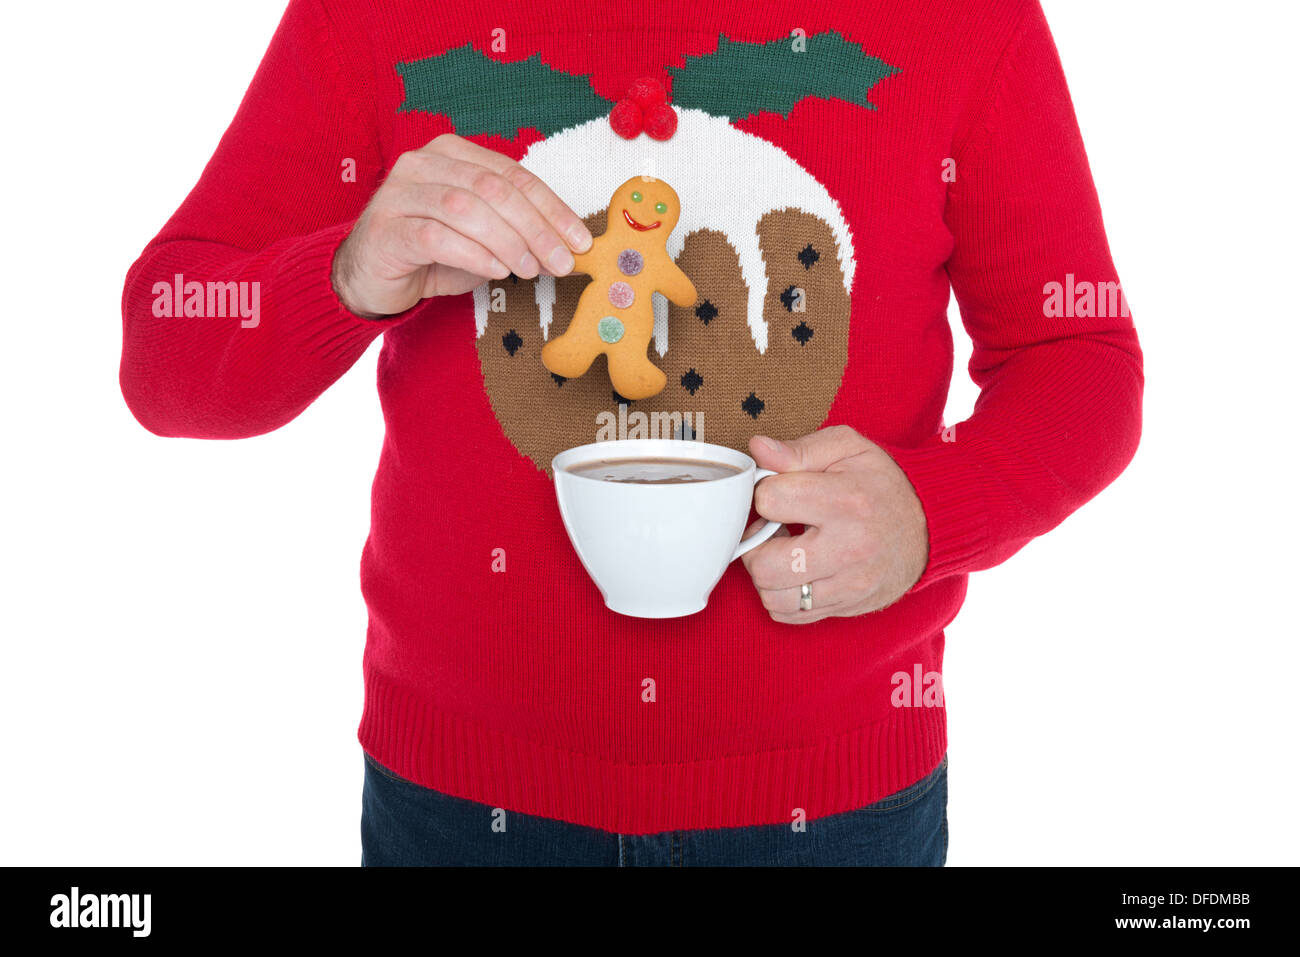 Mann trägt einen Weihnachtspullover, Tauchen Sie einen Lebkuchenmann in eine Tasse heiße Schokolade, isoliert auf einem weißen Hintergrund. Stockfoto